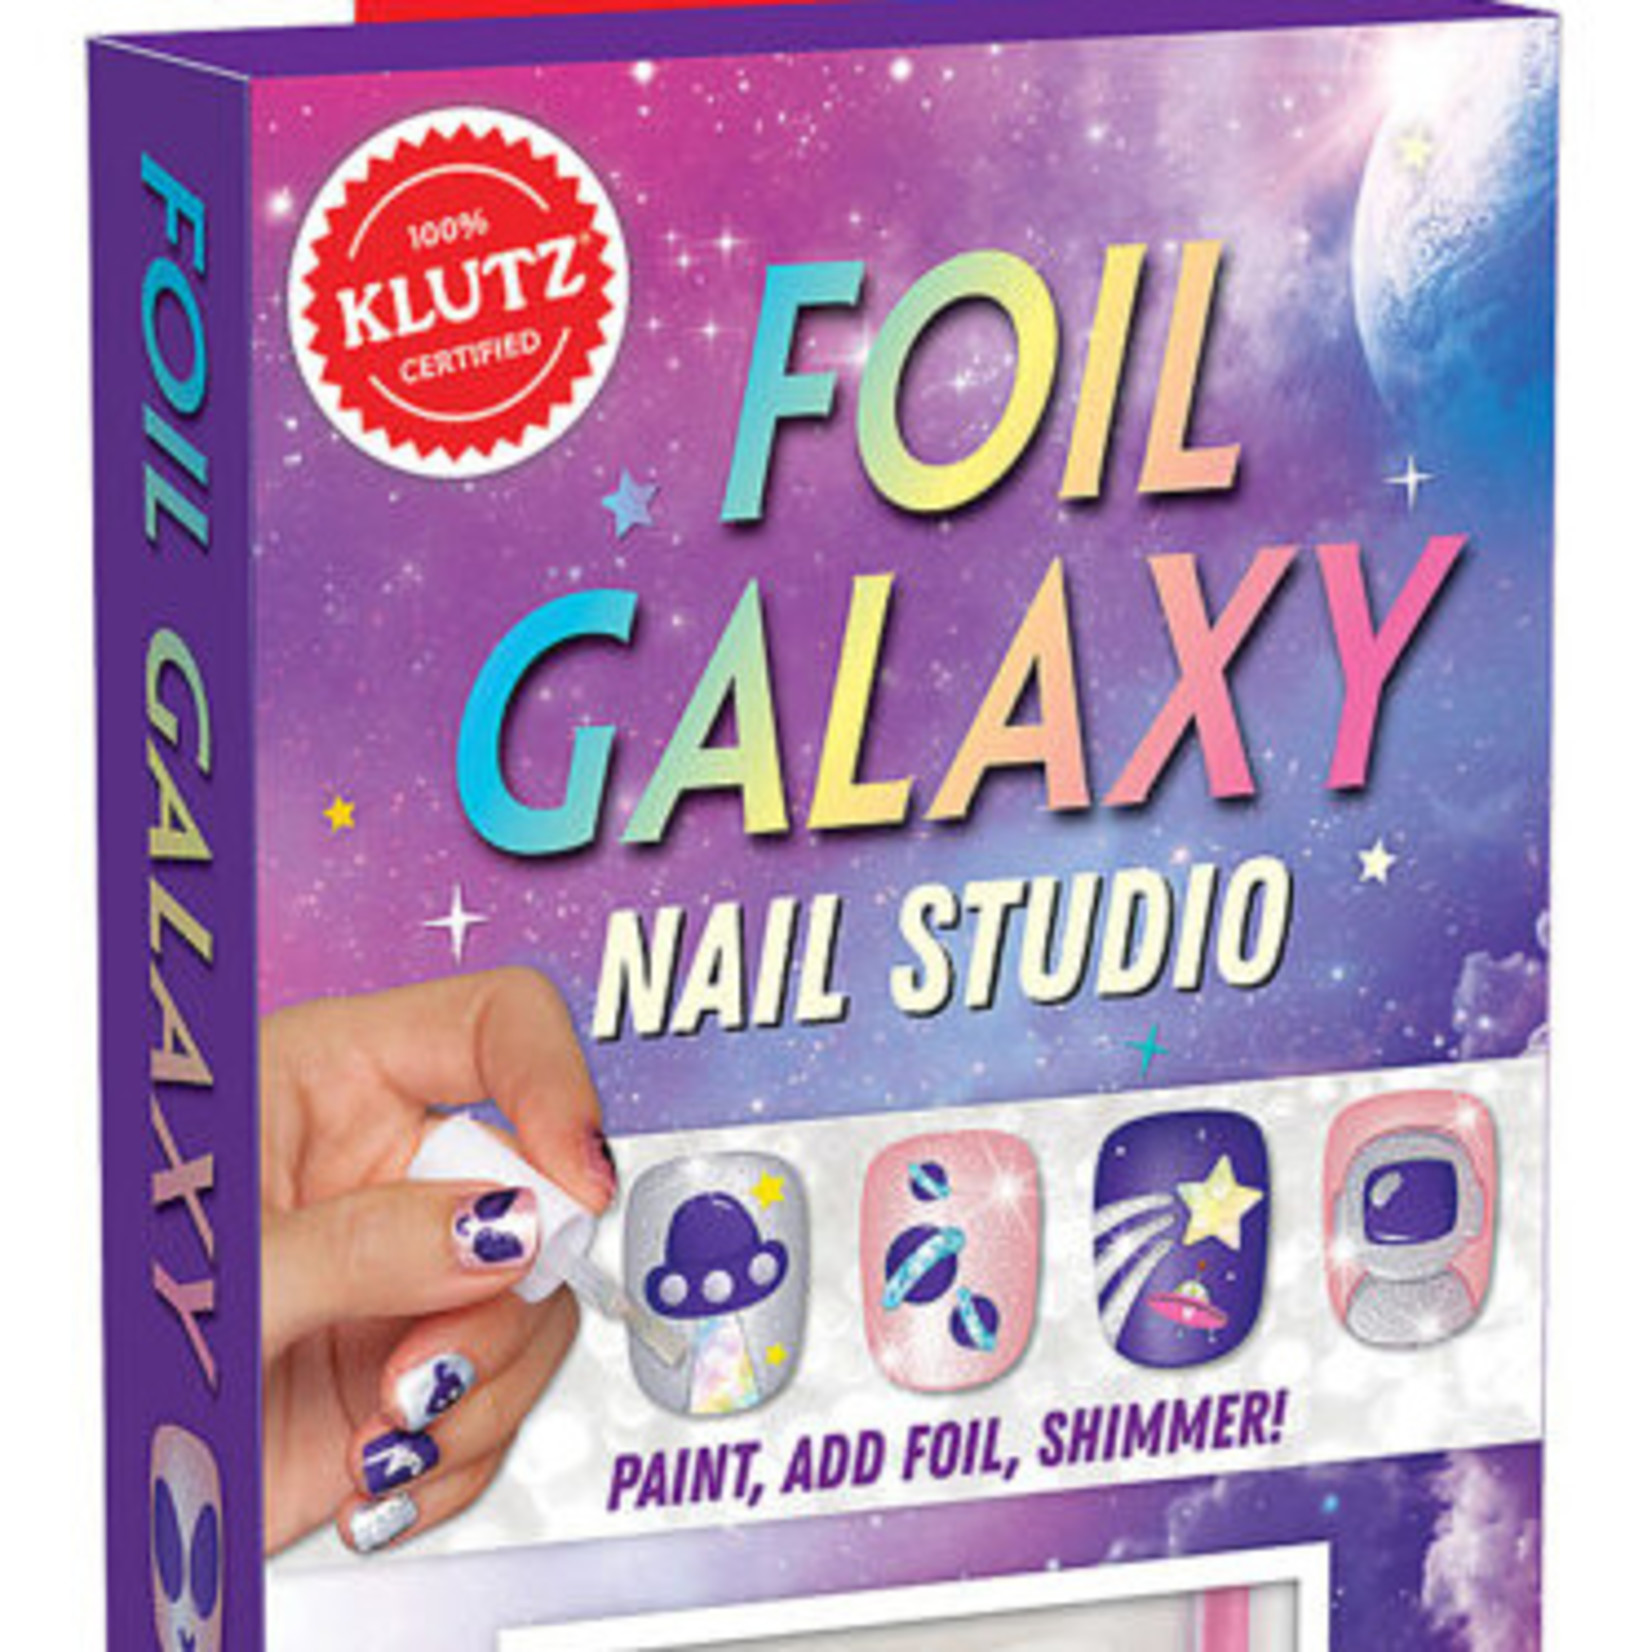 FOIL GALAXY NAIL STUDIO